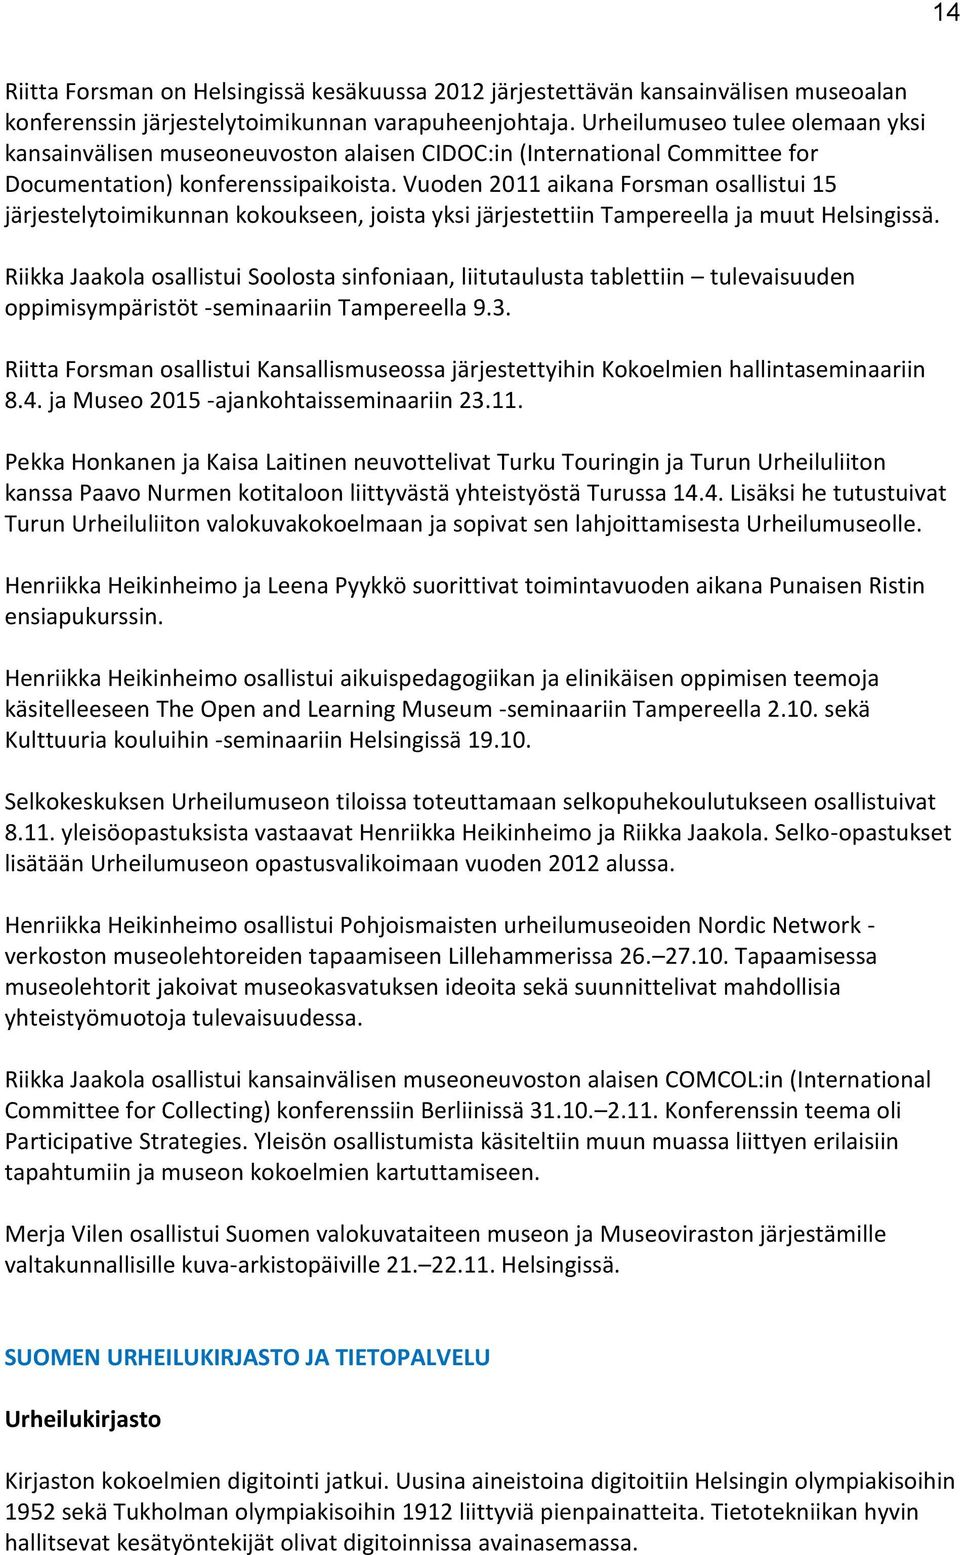 Vuoden 2011 aikana Forsman osallistui 15 järjestelytoimikunnan kokoukseen, joista yksi järjestettiin Tampereella ja muut Helsingissä.